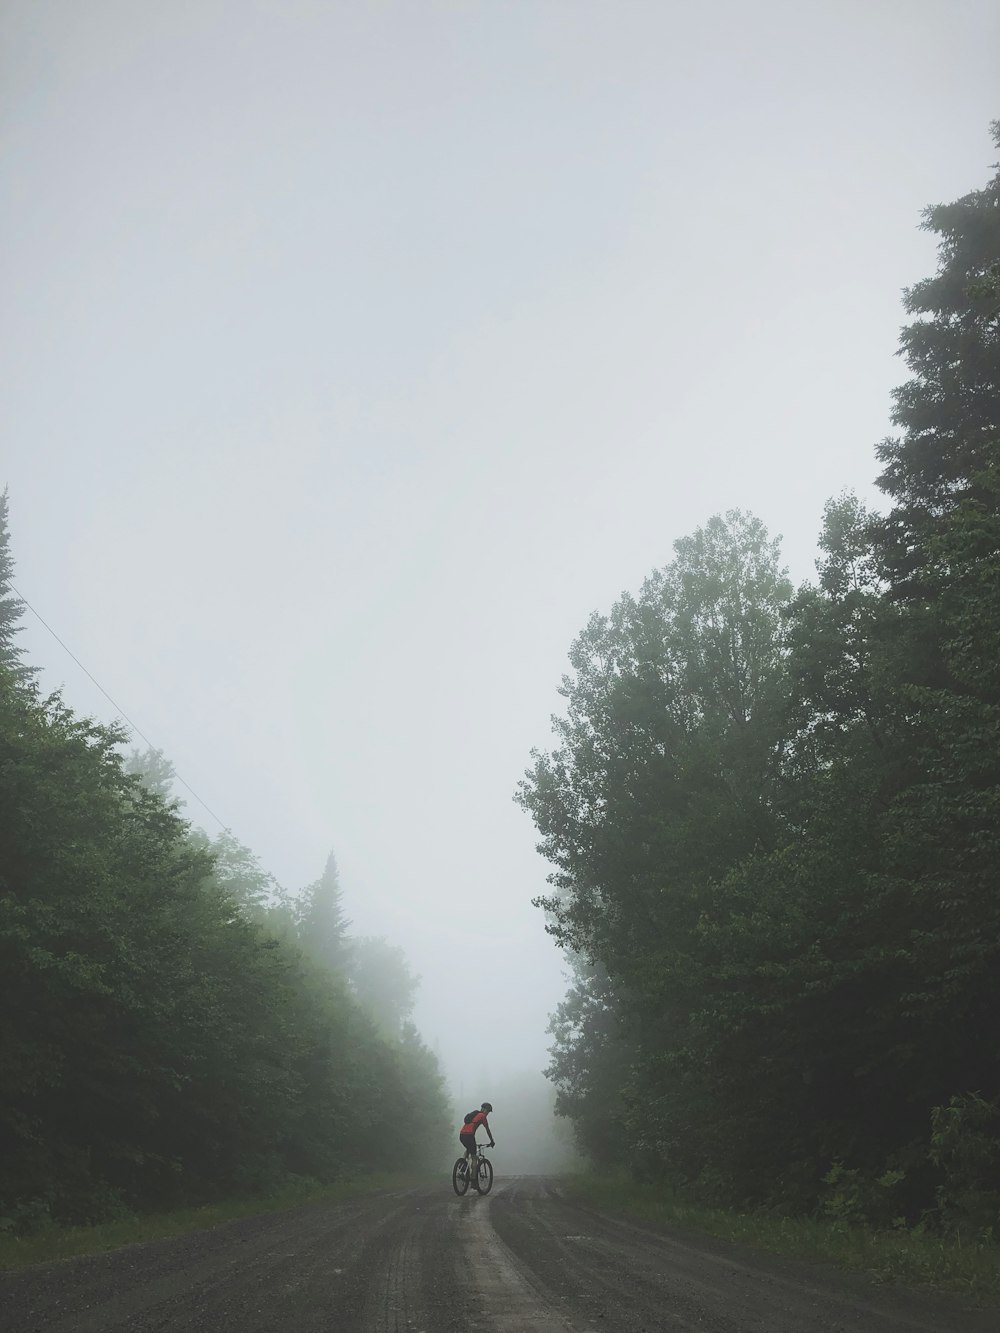 persona che va in bicicletta su una strada circondata da alberi alti e verdi durante la giornata nebbiosa